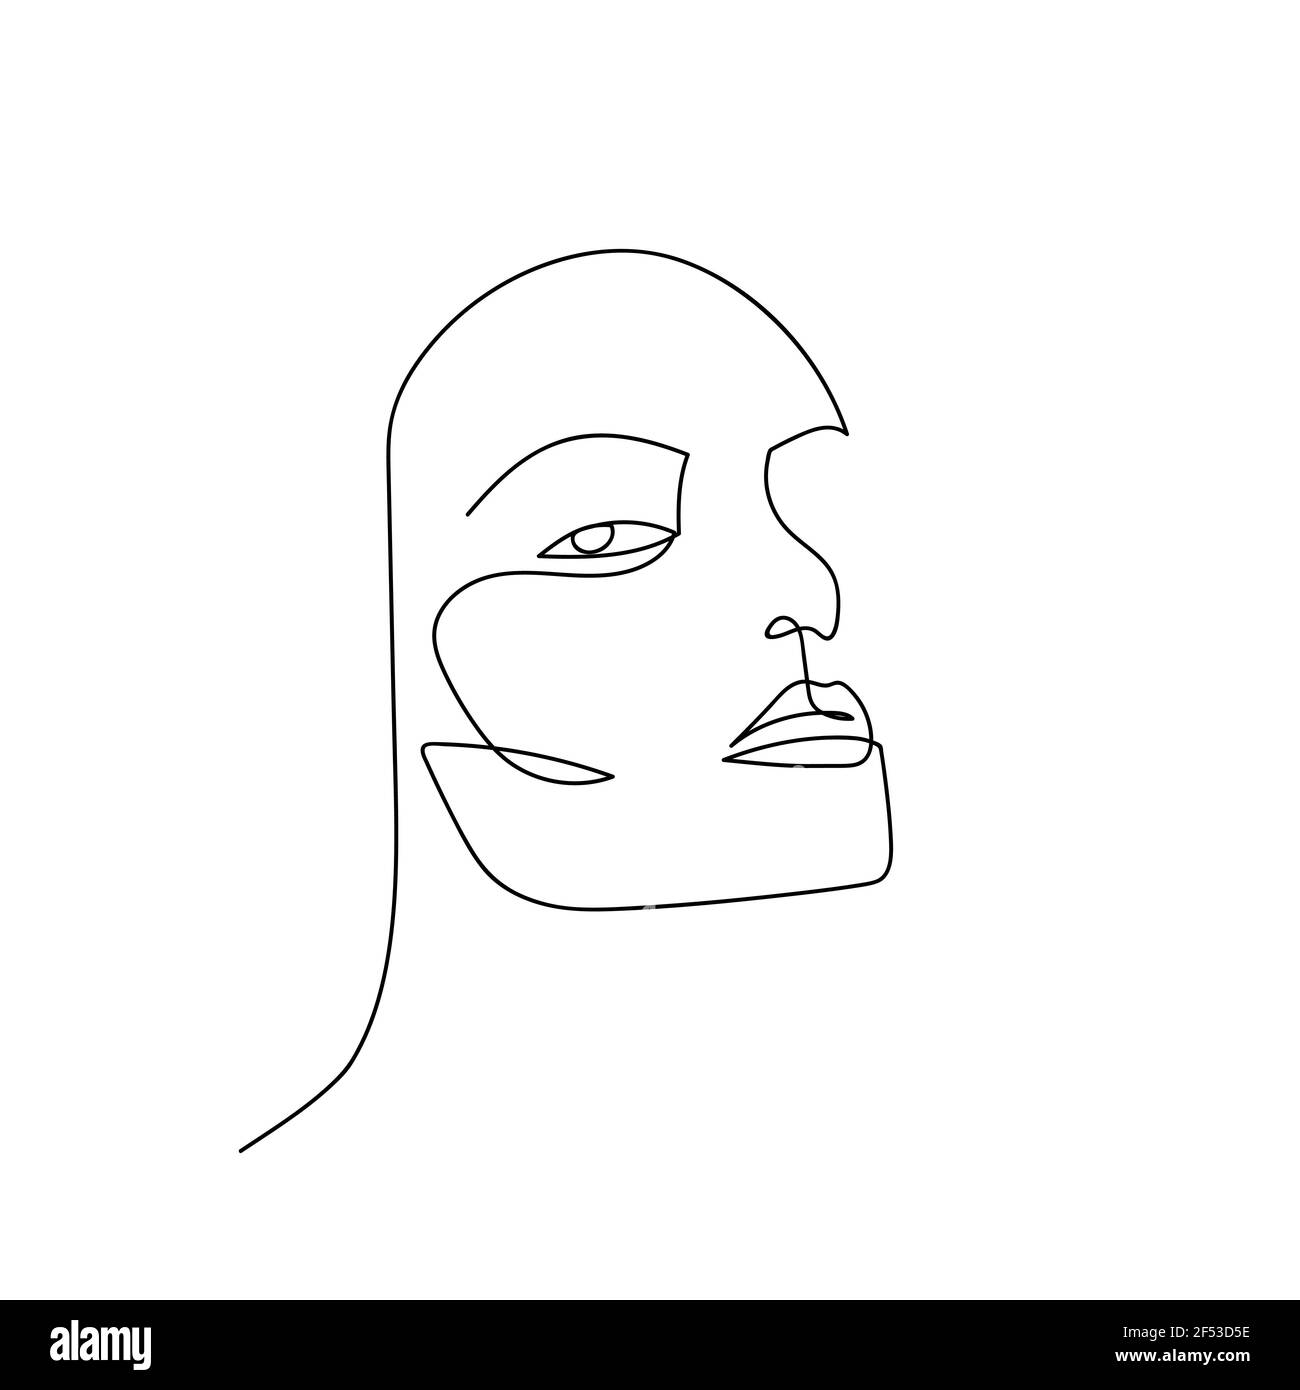 Durchgehende Linie abstraktes Hochformat. Handgezeichnete Linie unisexuelles Gesicht isoliert auf weißem Hintergrund. Frau oder Mann Mode Beauty-Konzept. Design für Modell Stock Vektor